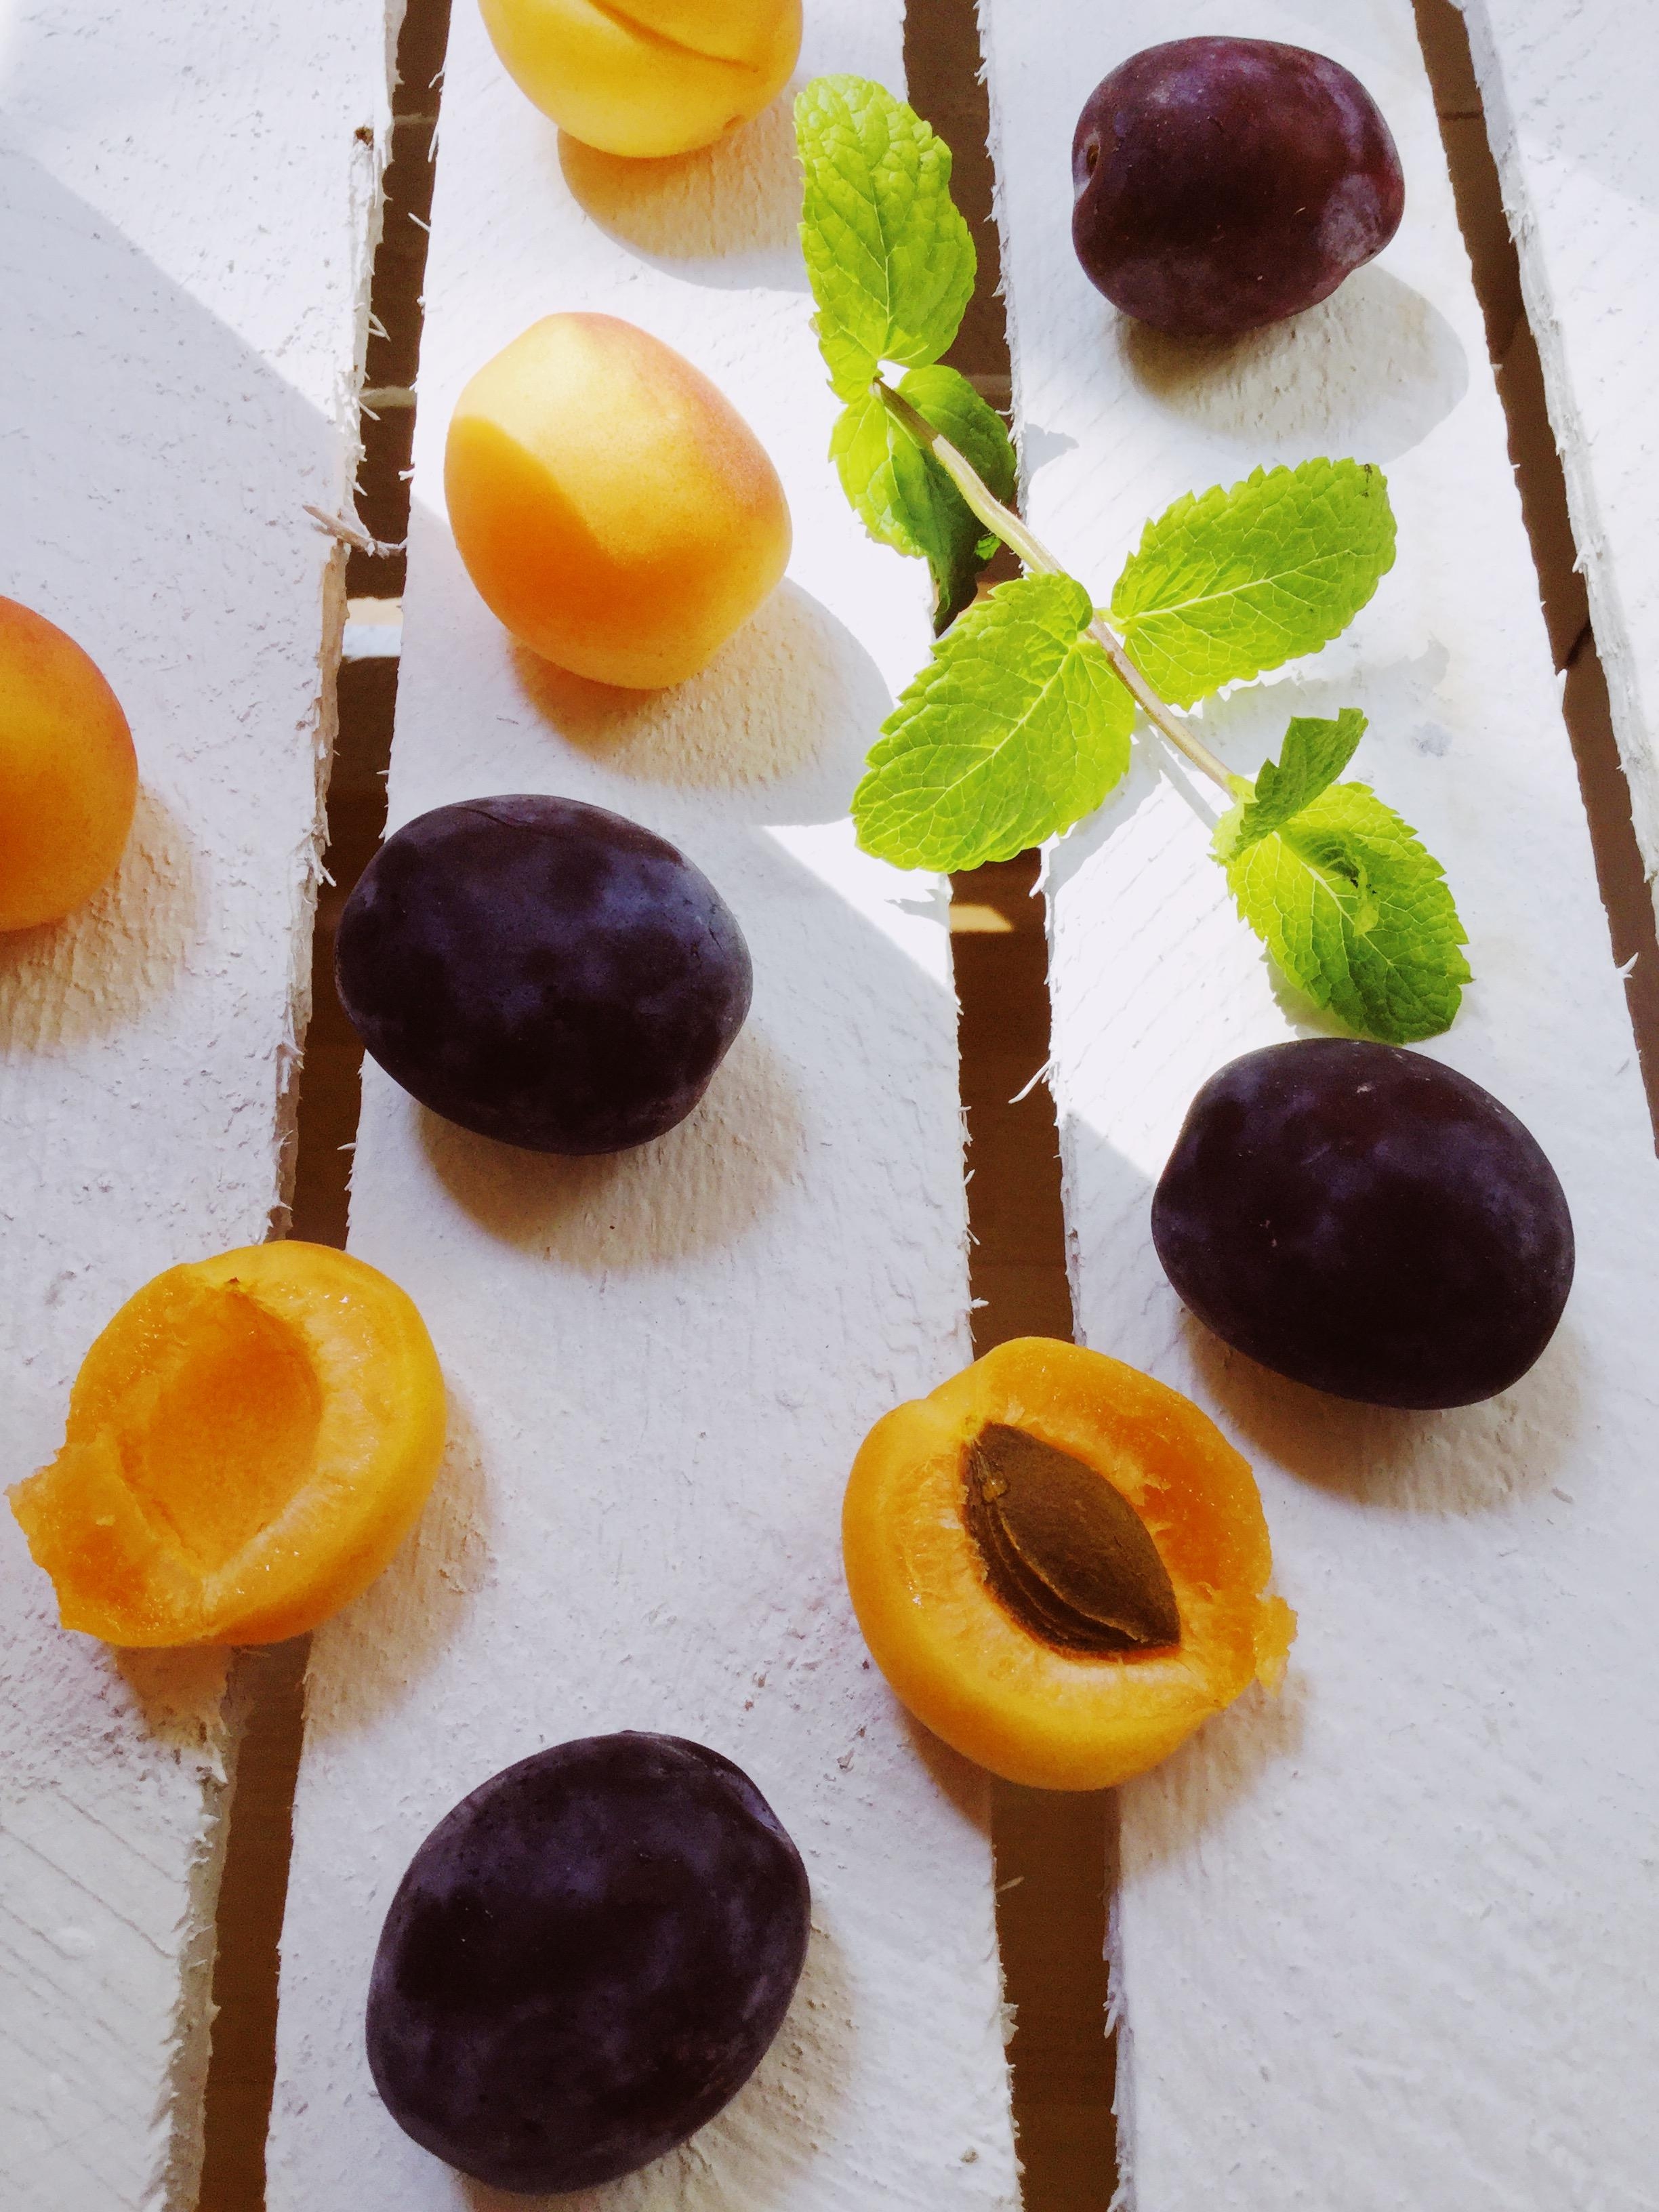 Aprikosensaison ist eröffnet 😍🌱 #food #foodblogger #aprikose #lecker #gesund ➡️weitere Infos auf Instagram 